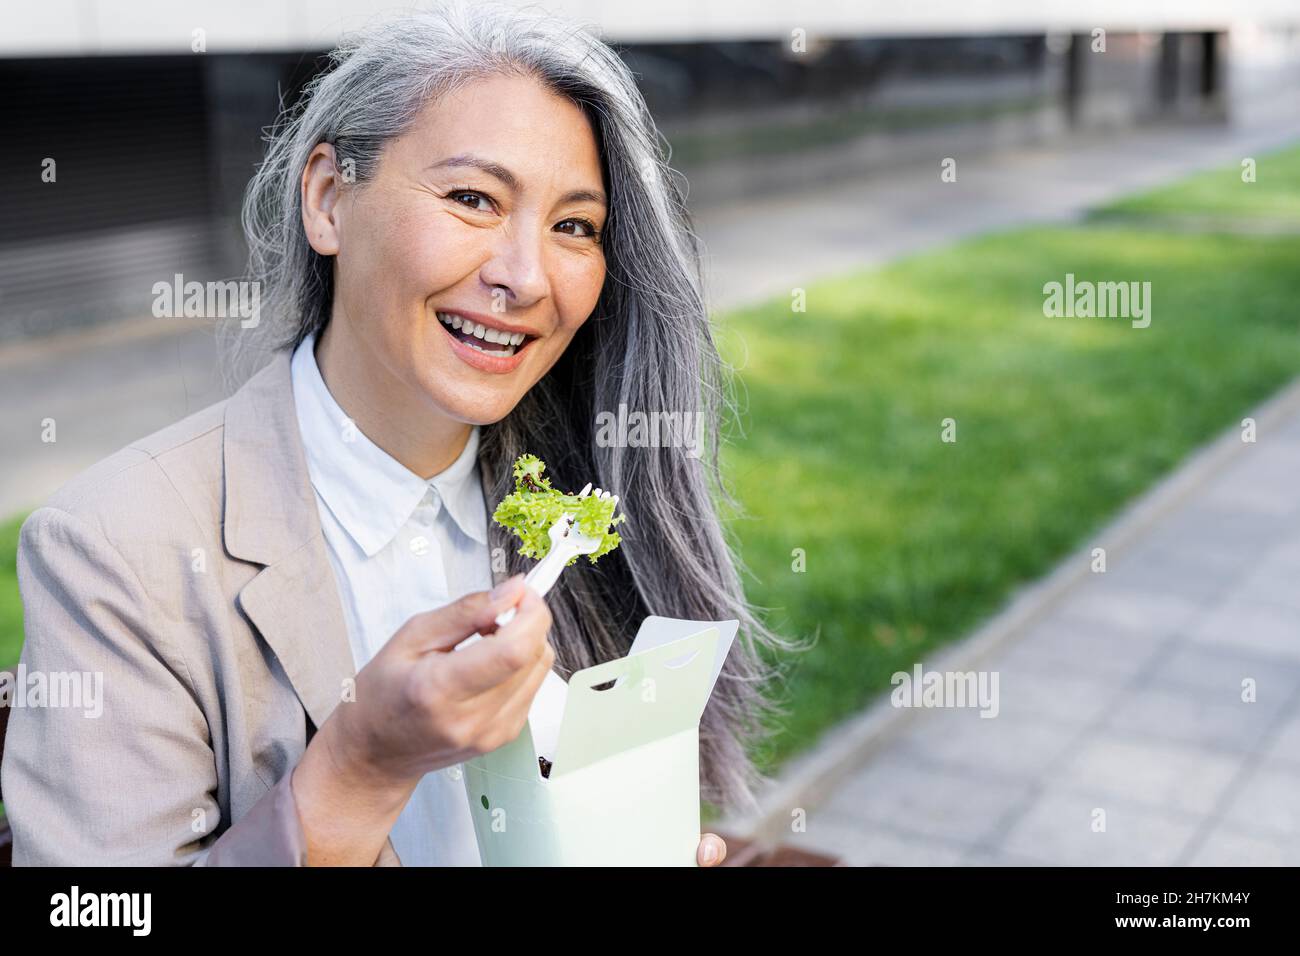 Lächelnde Frau mit grauem Haar, die die Lebensmittelbox hält Stockfoto